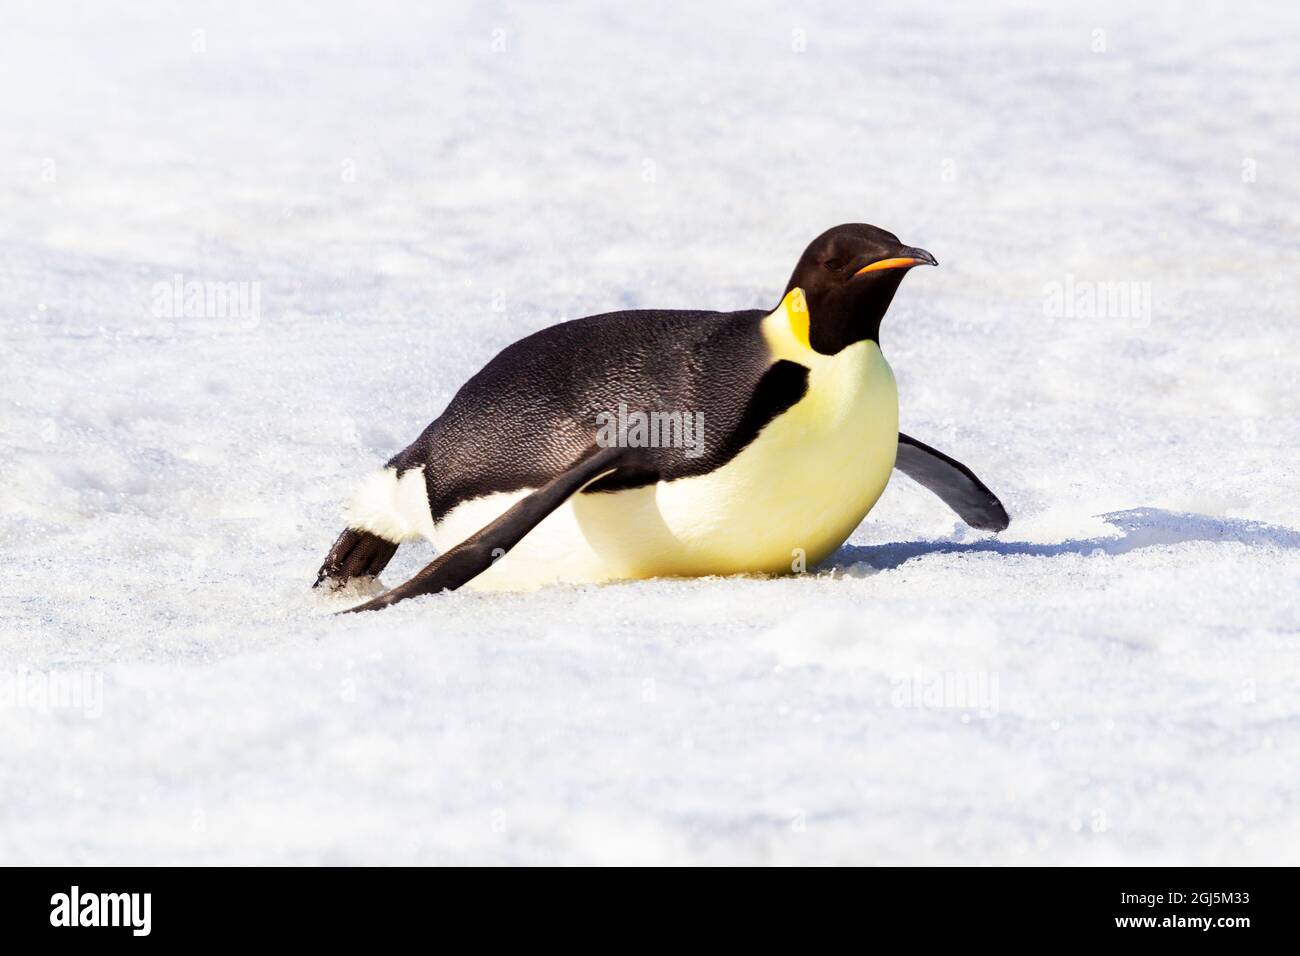 Antartide, Snow Hill. Un pinguino imperatore si spinge sul ventre con i piedi per risparmiare energia. Foto Stock